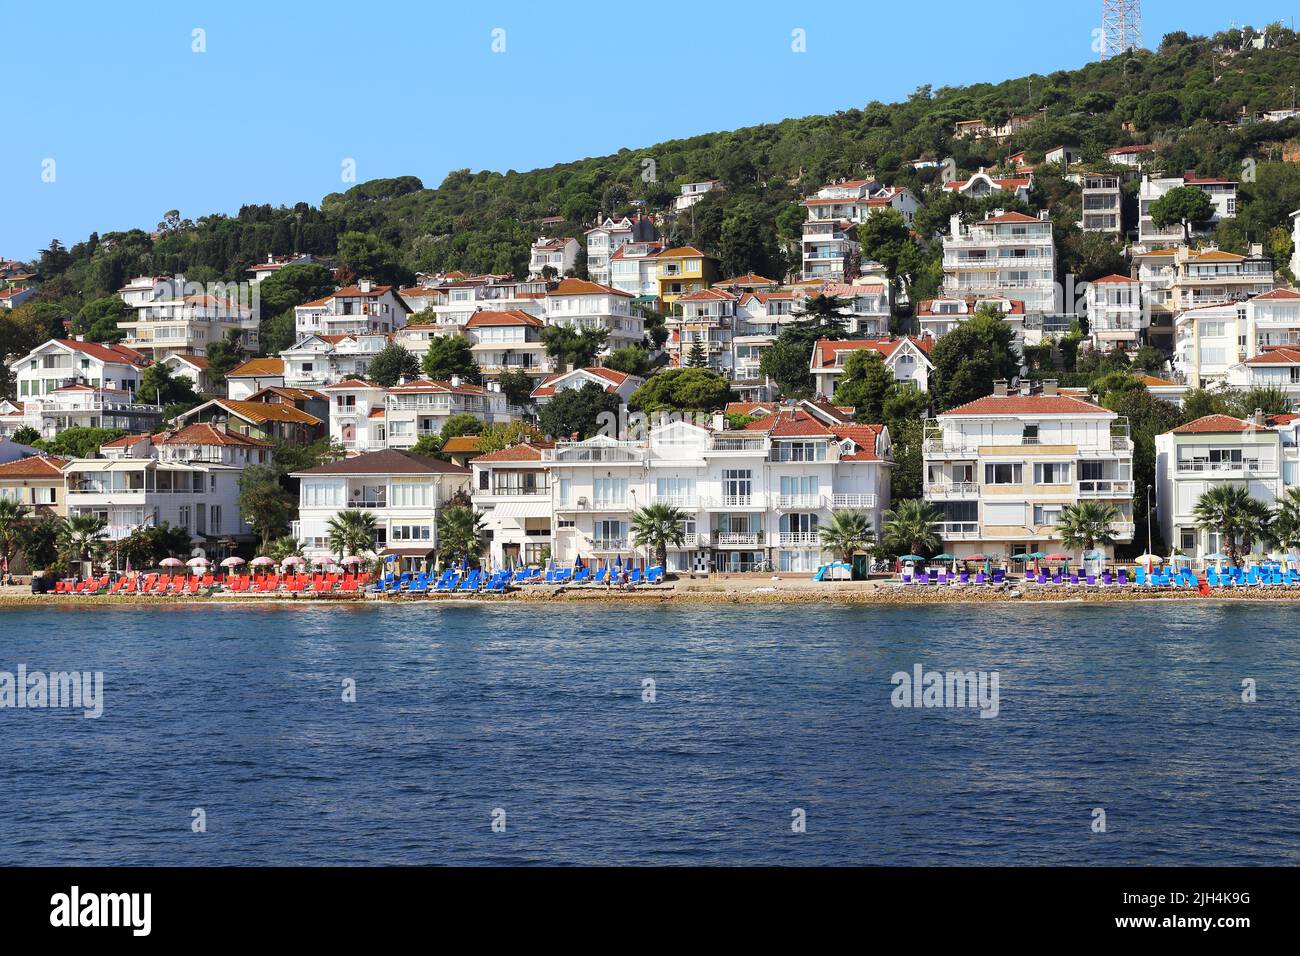 KINALIADA, TURQUIE - 15 SEPTEMBRE 2017 : c'est un développement résidentiel et les plages de l'une des îles Princes dans la mer de Marmara. Banque D'Images